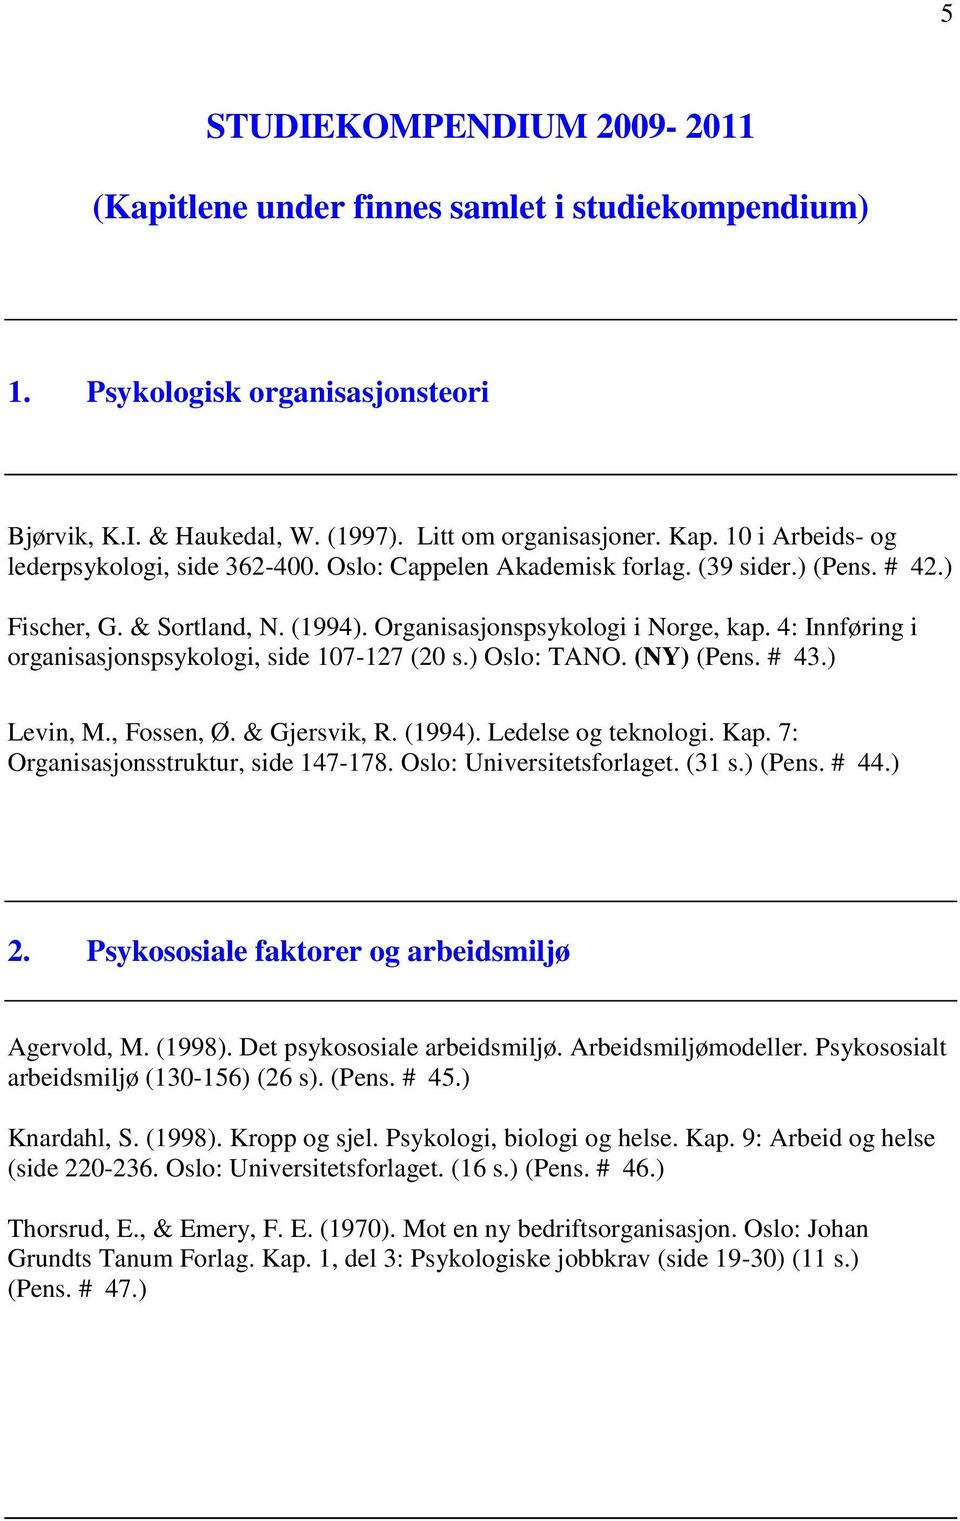 4: Innføring i organisasjonspsykologi, side 107-127 (20 s.) Oslo: TANO. (NY) (Pens. # 43.) Levin, M., Fossen, Ø. & Gjersvik, R. (1994). Ledelse og teknologi. Kap.